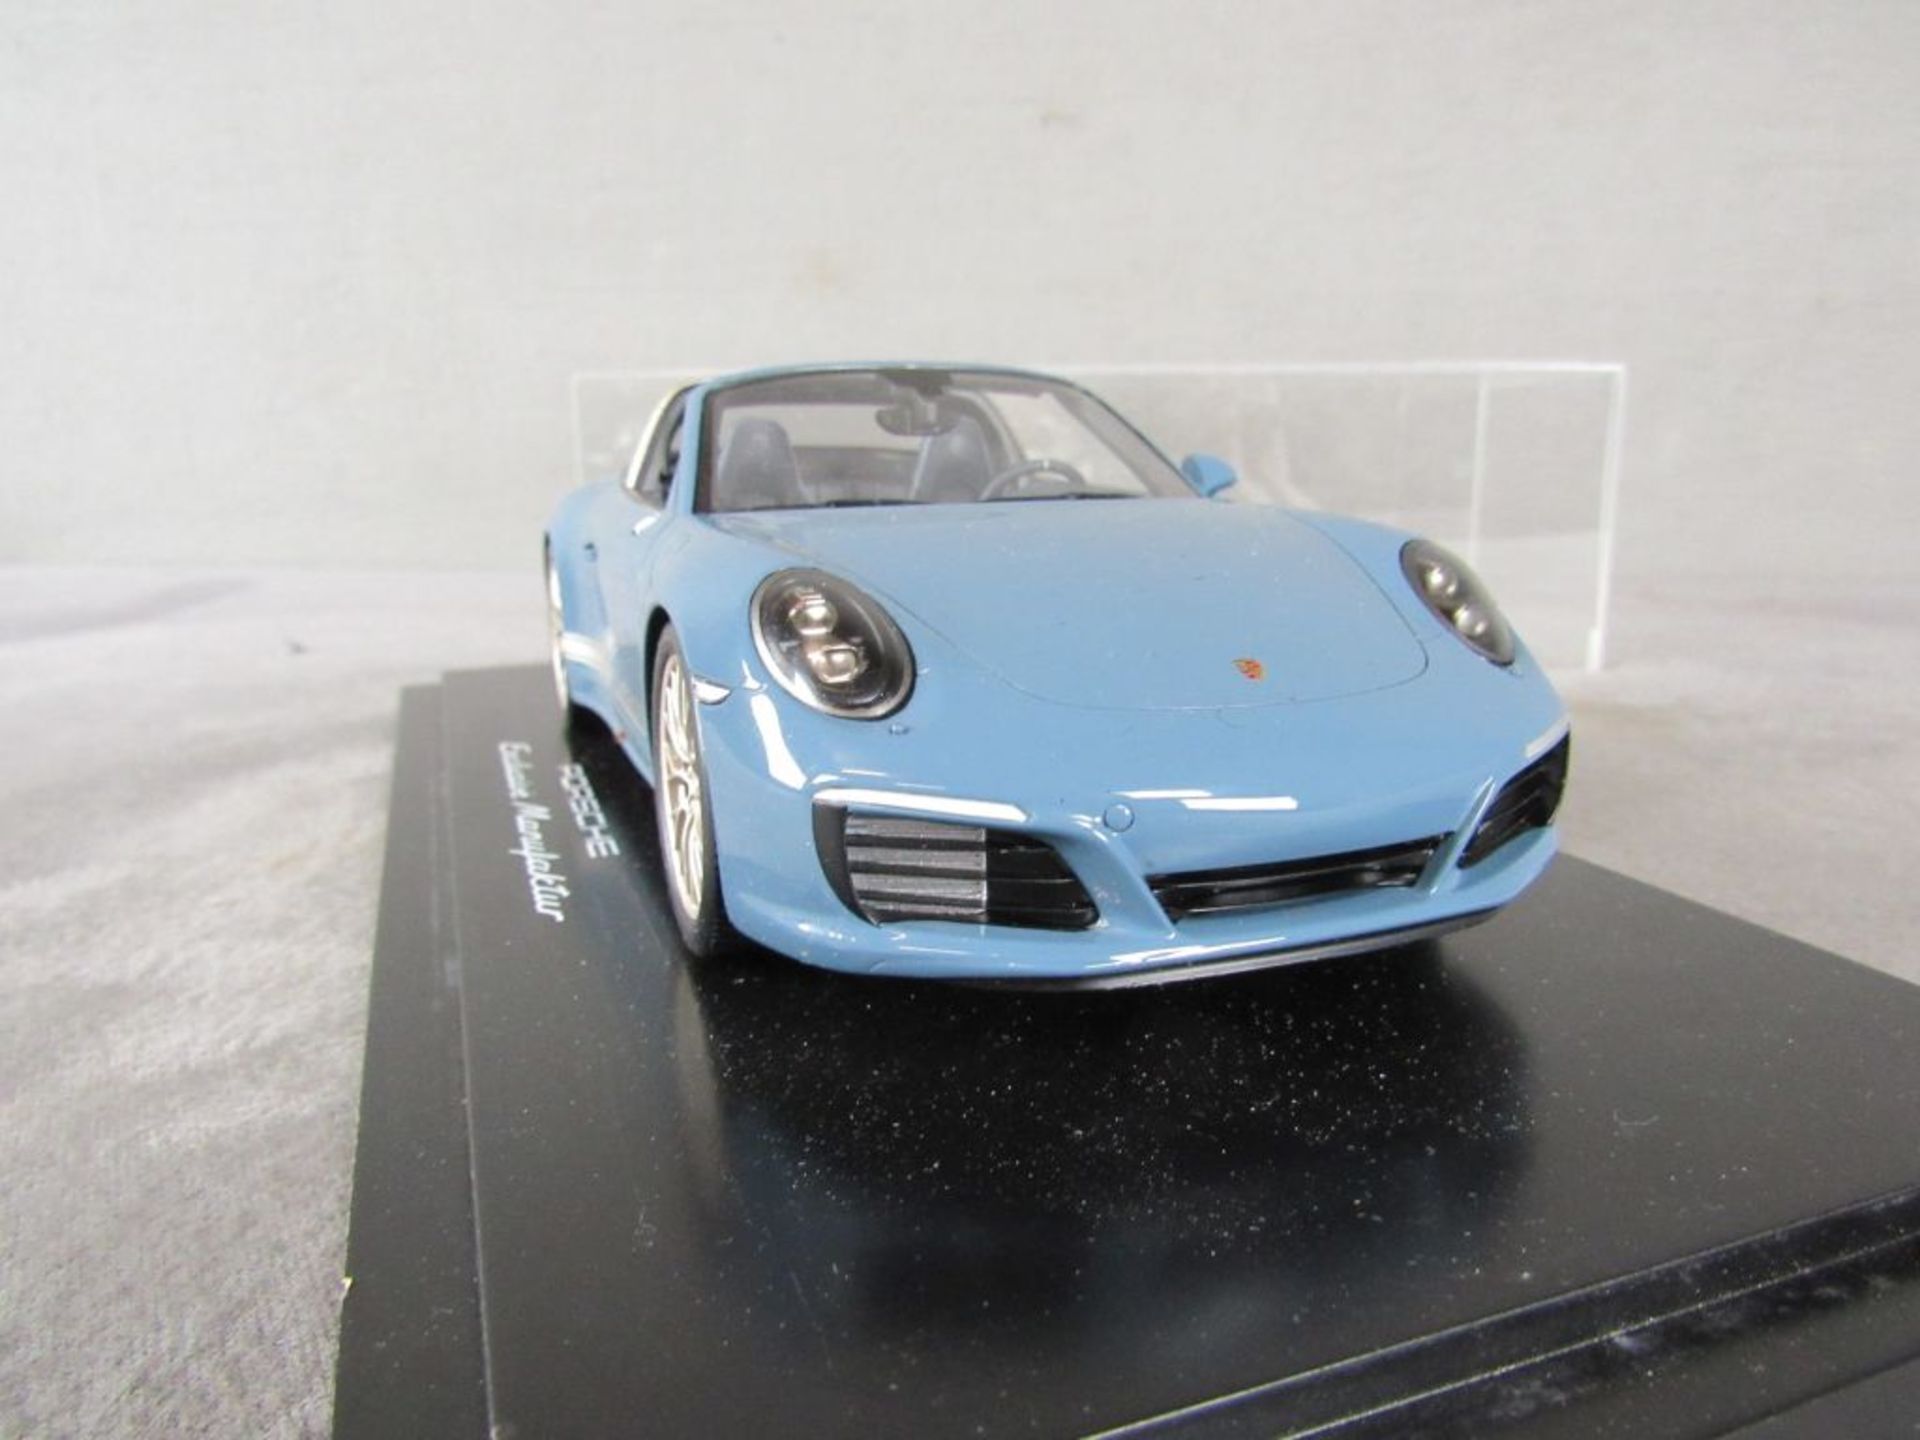 Modellauto Porsche Original Porsche Modell im Maßstab 1:18 in original Box unbespieltes - Bild 4 aus 5